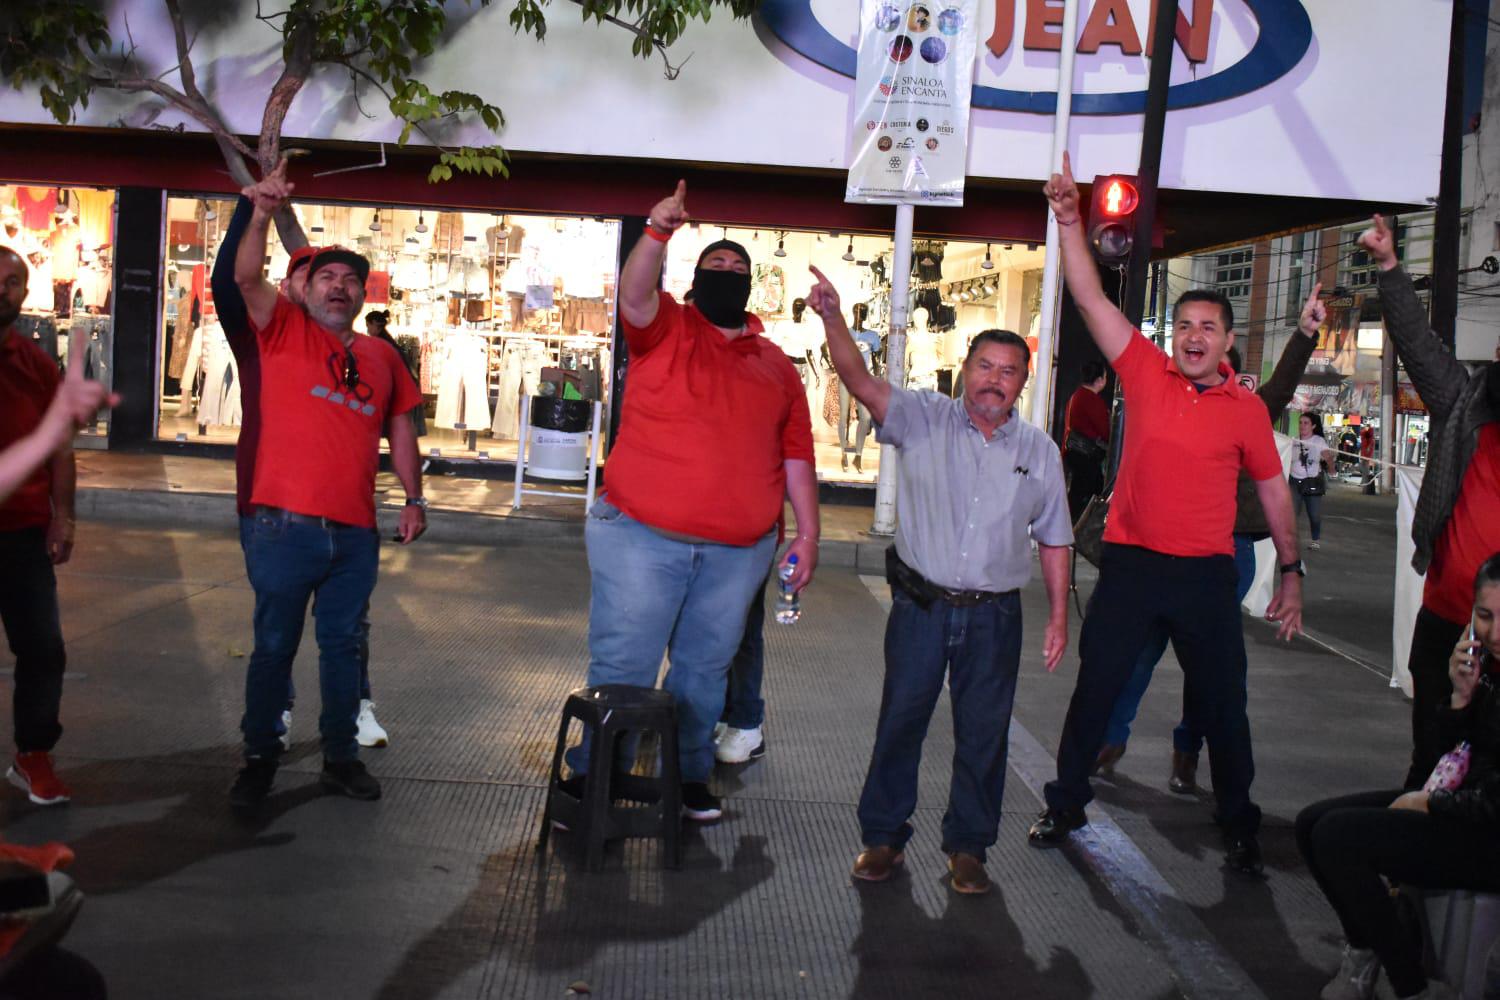 $!Mantienen sindicalizados bloqueo en la Obregón de Culiacán